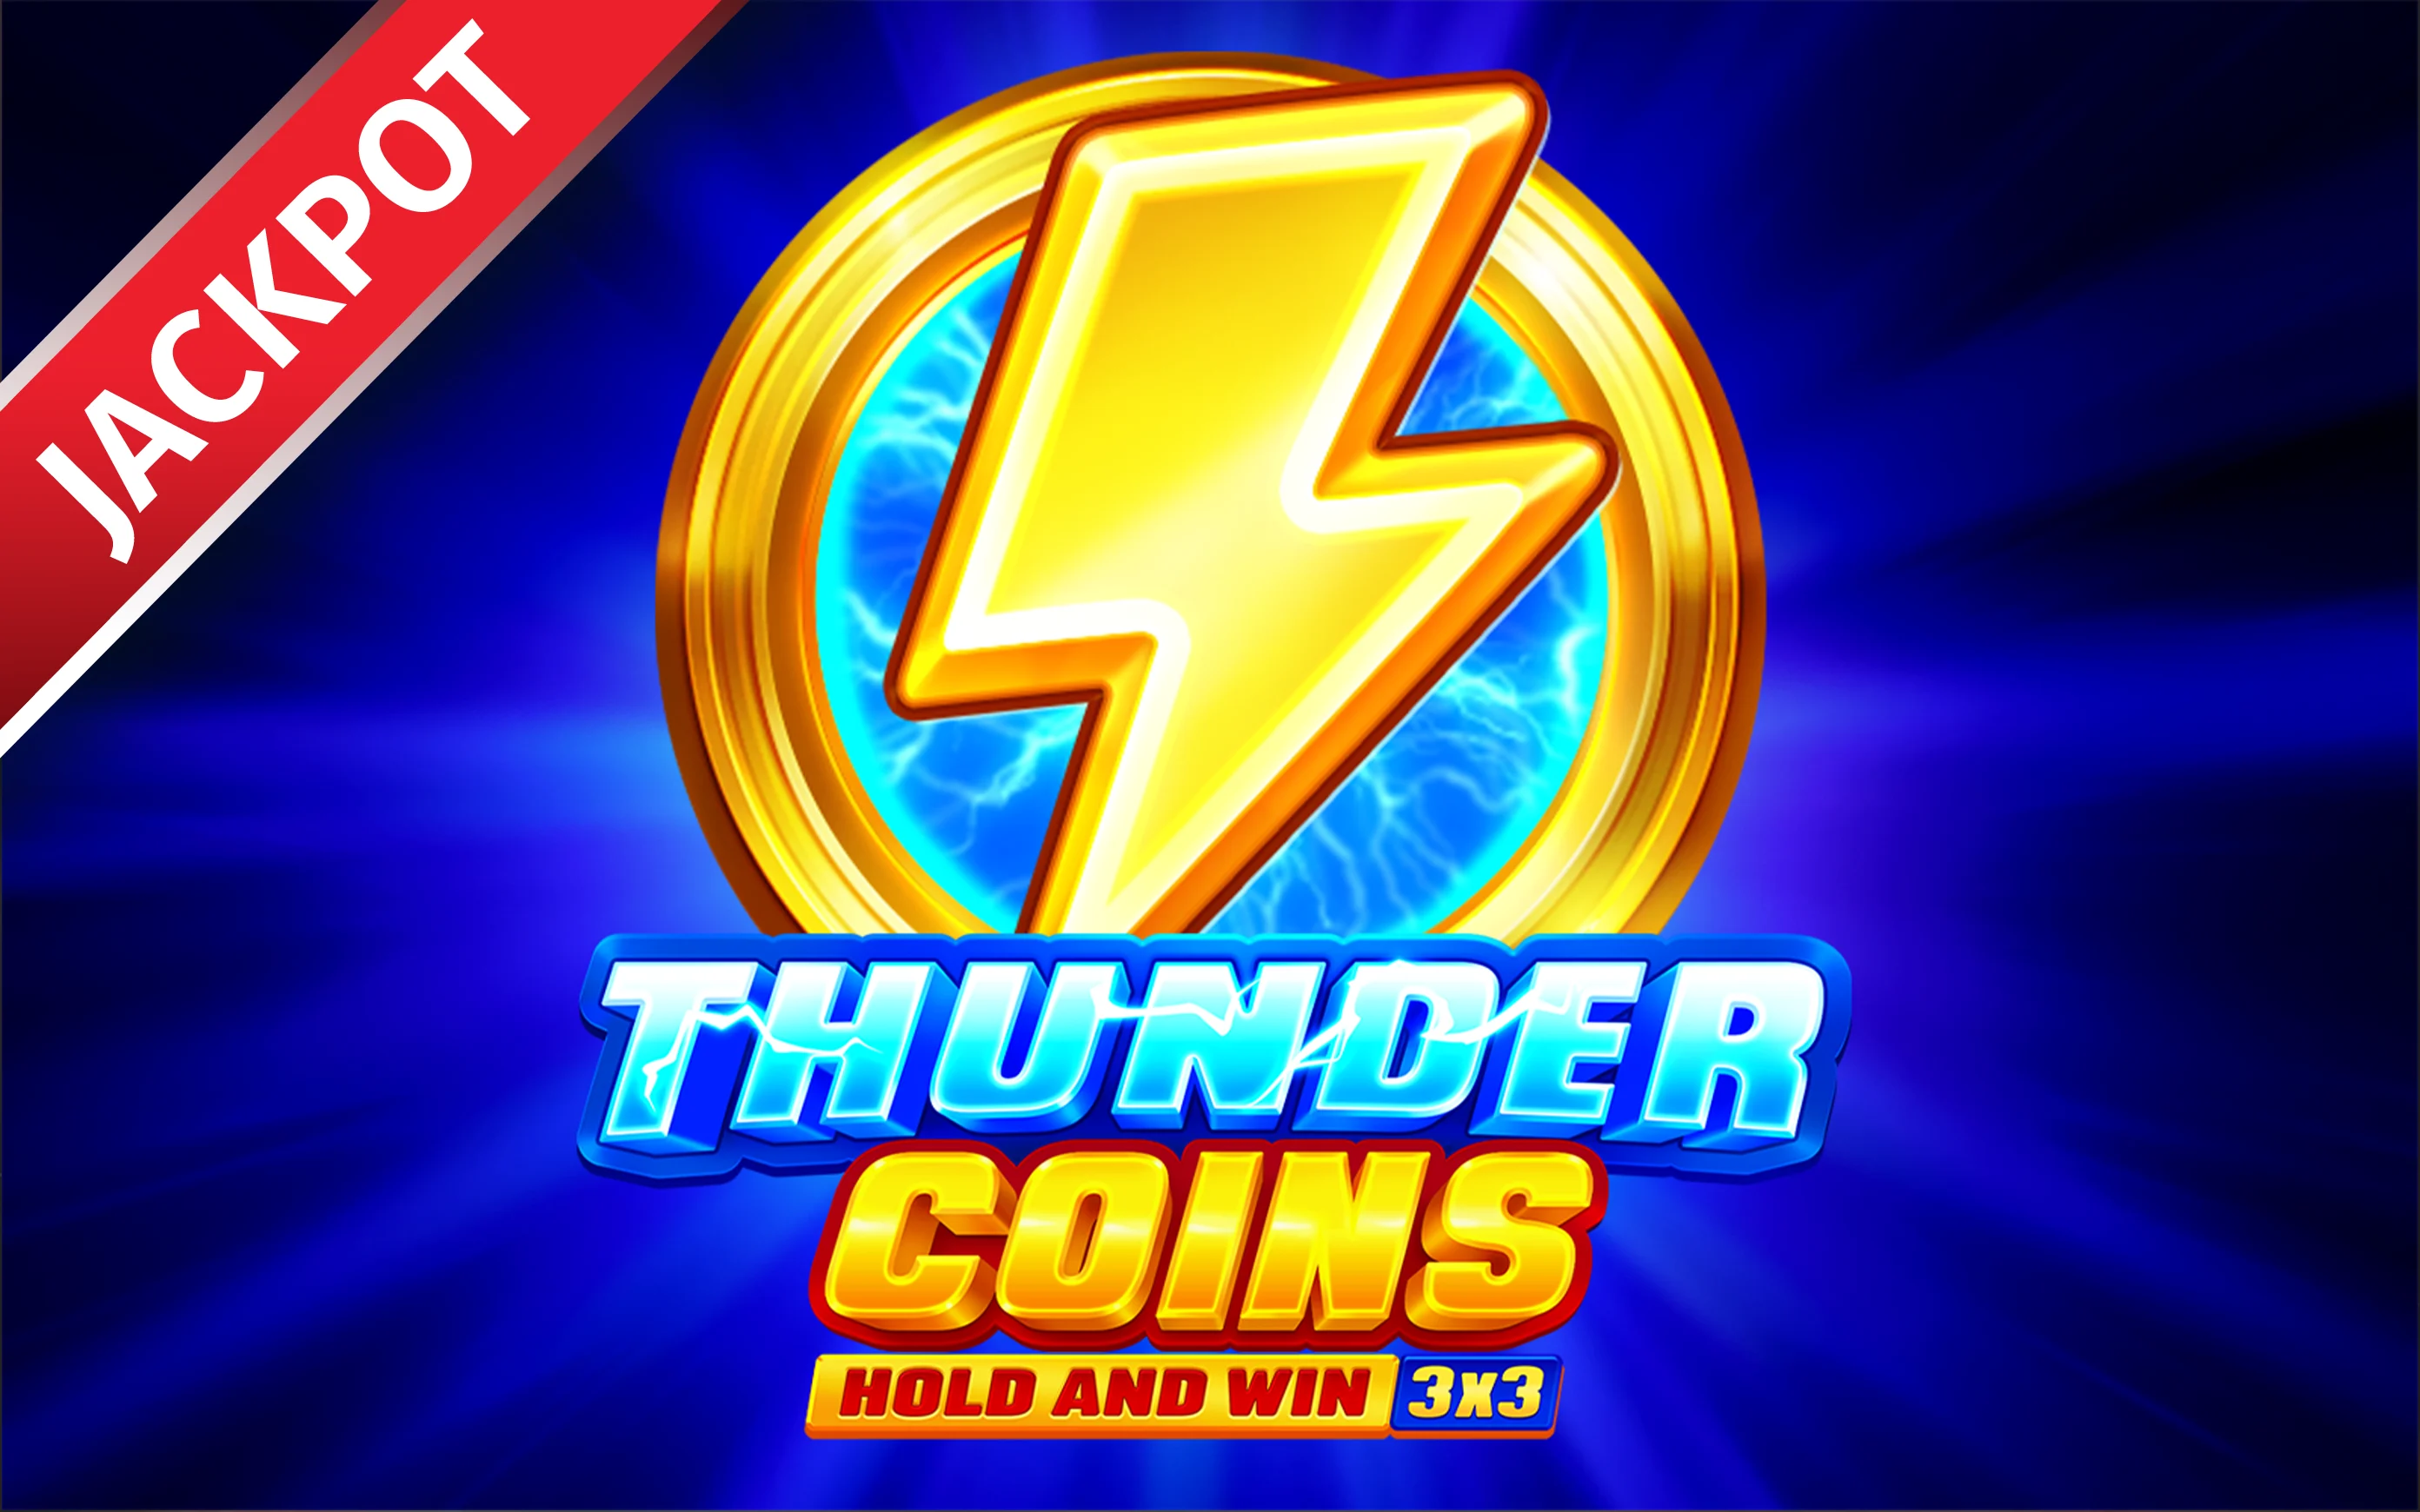 Chơi Thunder Coins: Hold and Win trên sòng bạc trực tuyến Starcasino.be